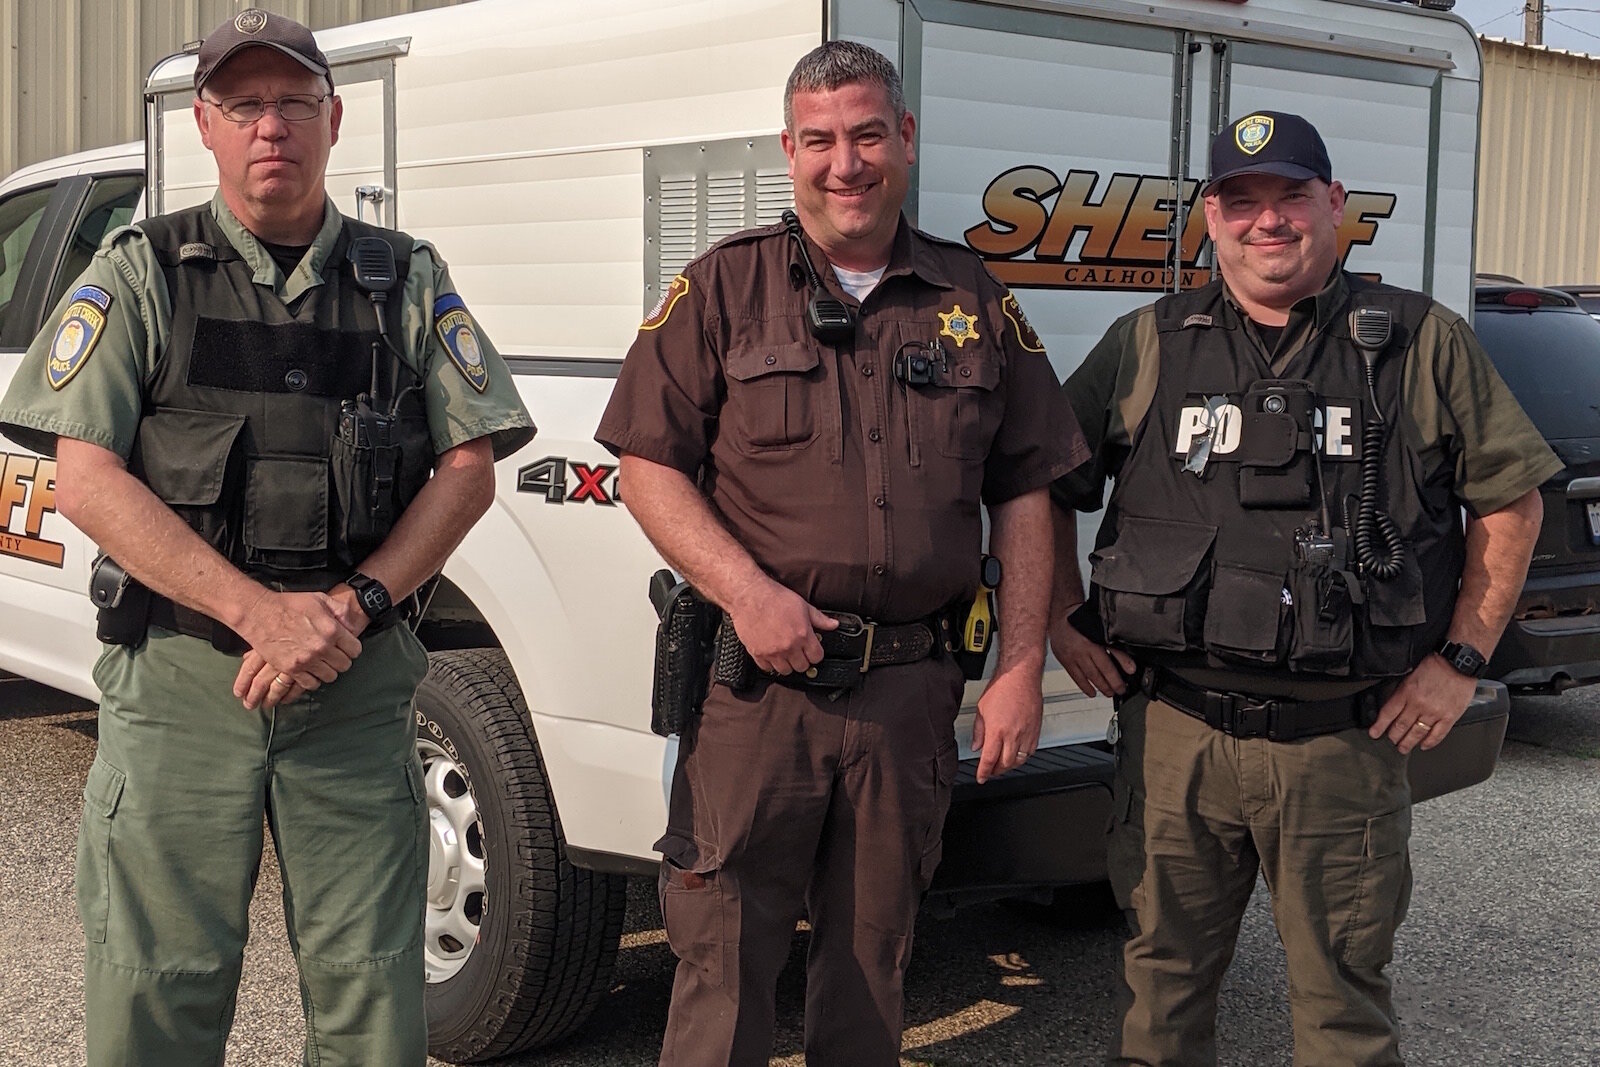 From left, Officer Michael Ehart, Deputy Michael Vanderbilt, and Officer Pat Dellinger.